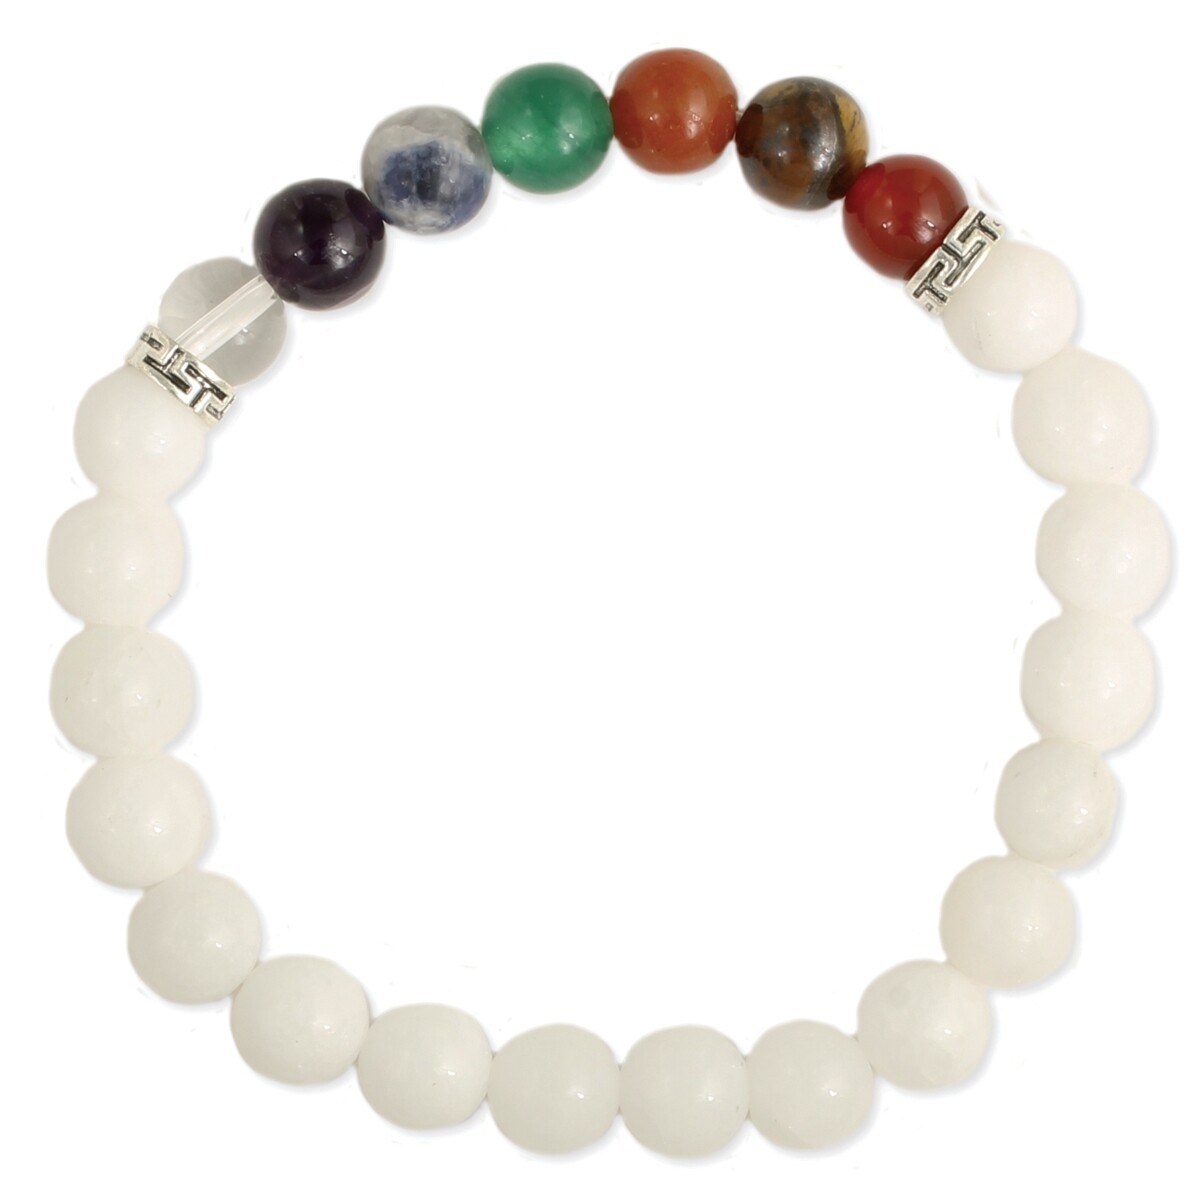 Purity & Balance Chakra White Stone Bracelet